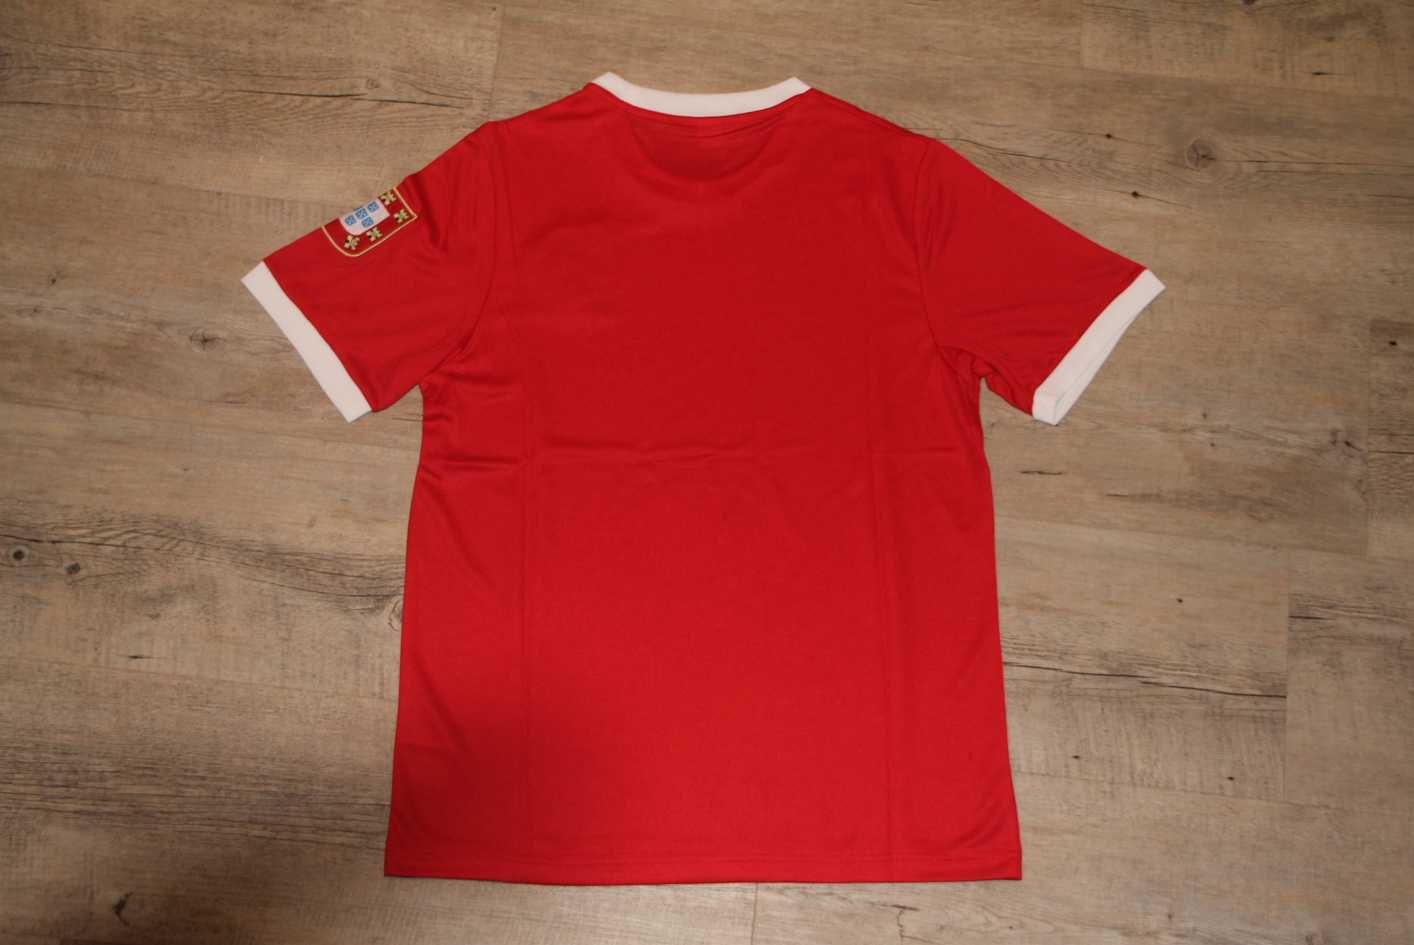 [PROMOÇÃO] T-shirts de Futebol Portugal, Porto e Benfica.